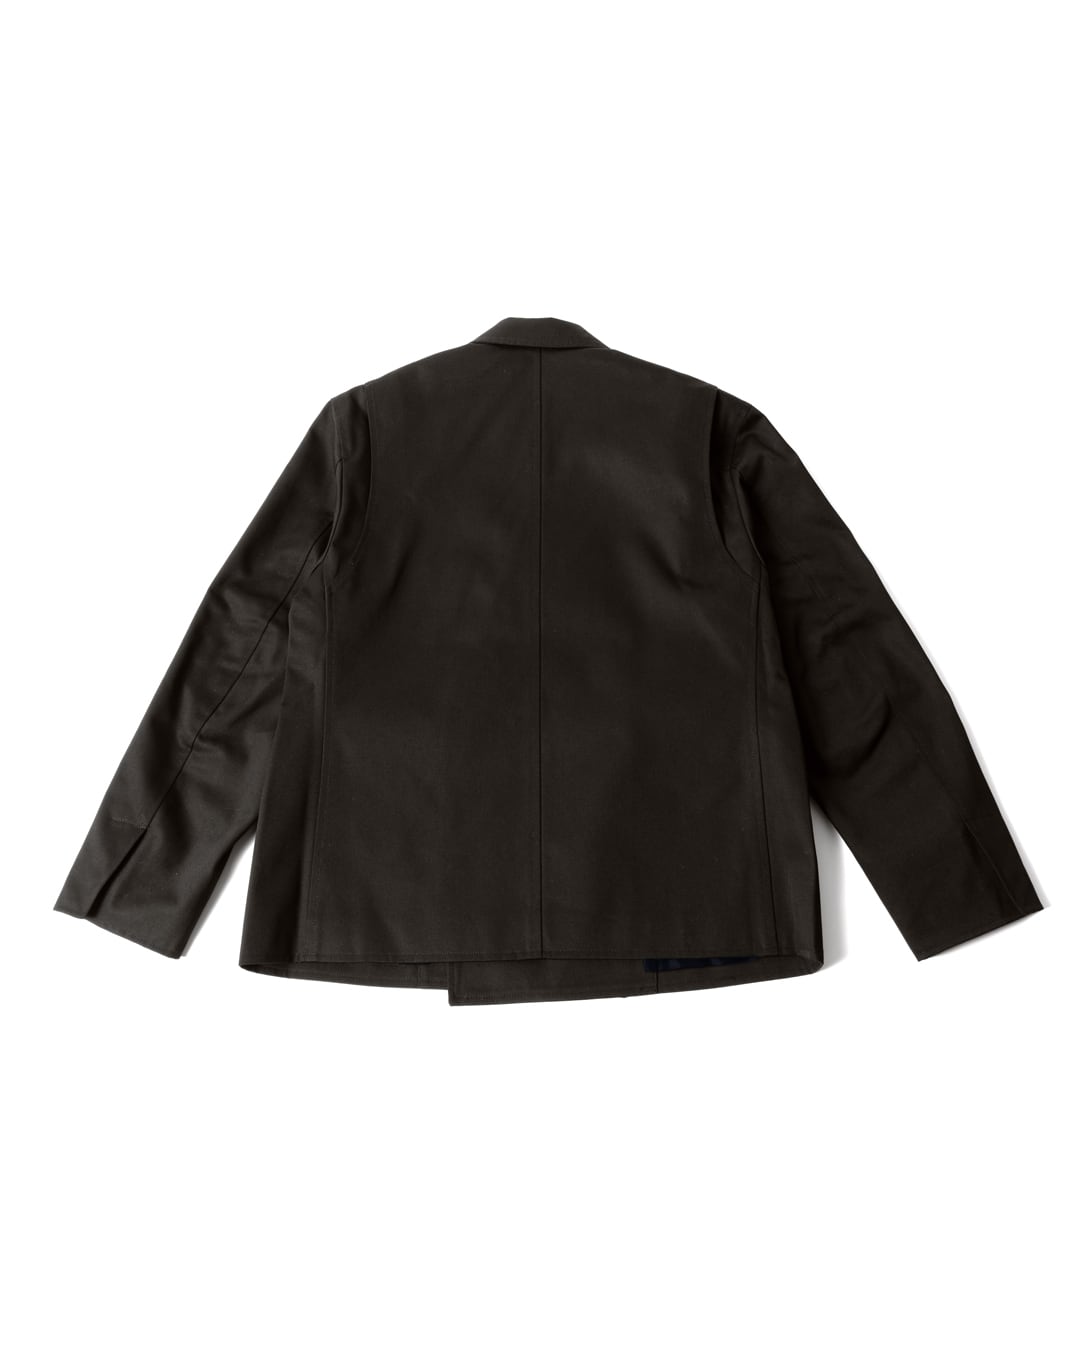 カラーブラックSimplyComplicated Dress Boxy Work Jacket